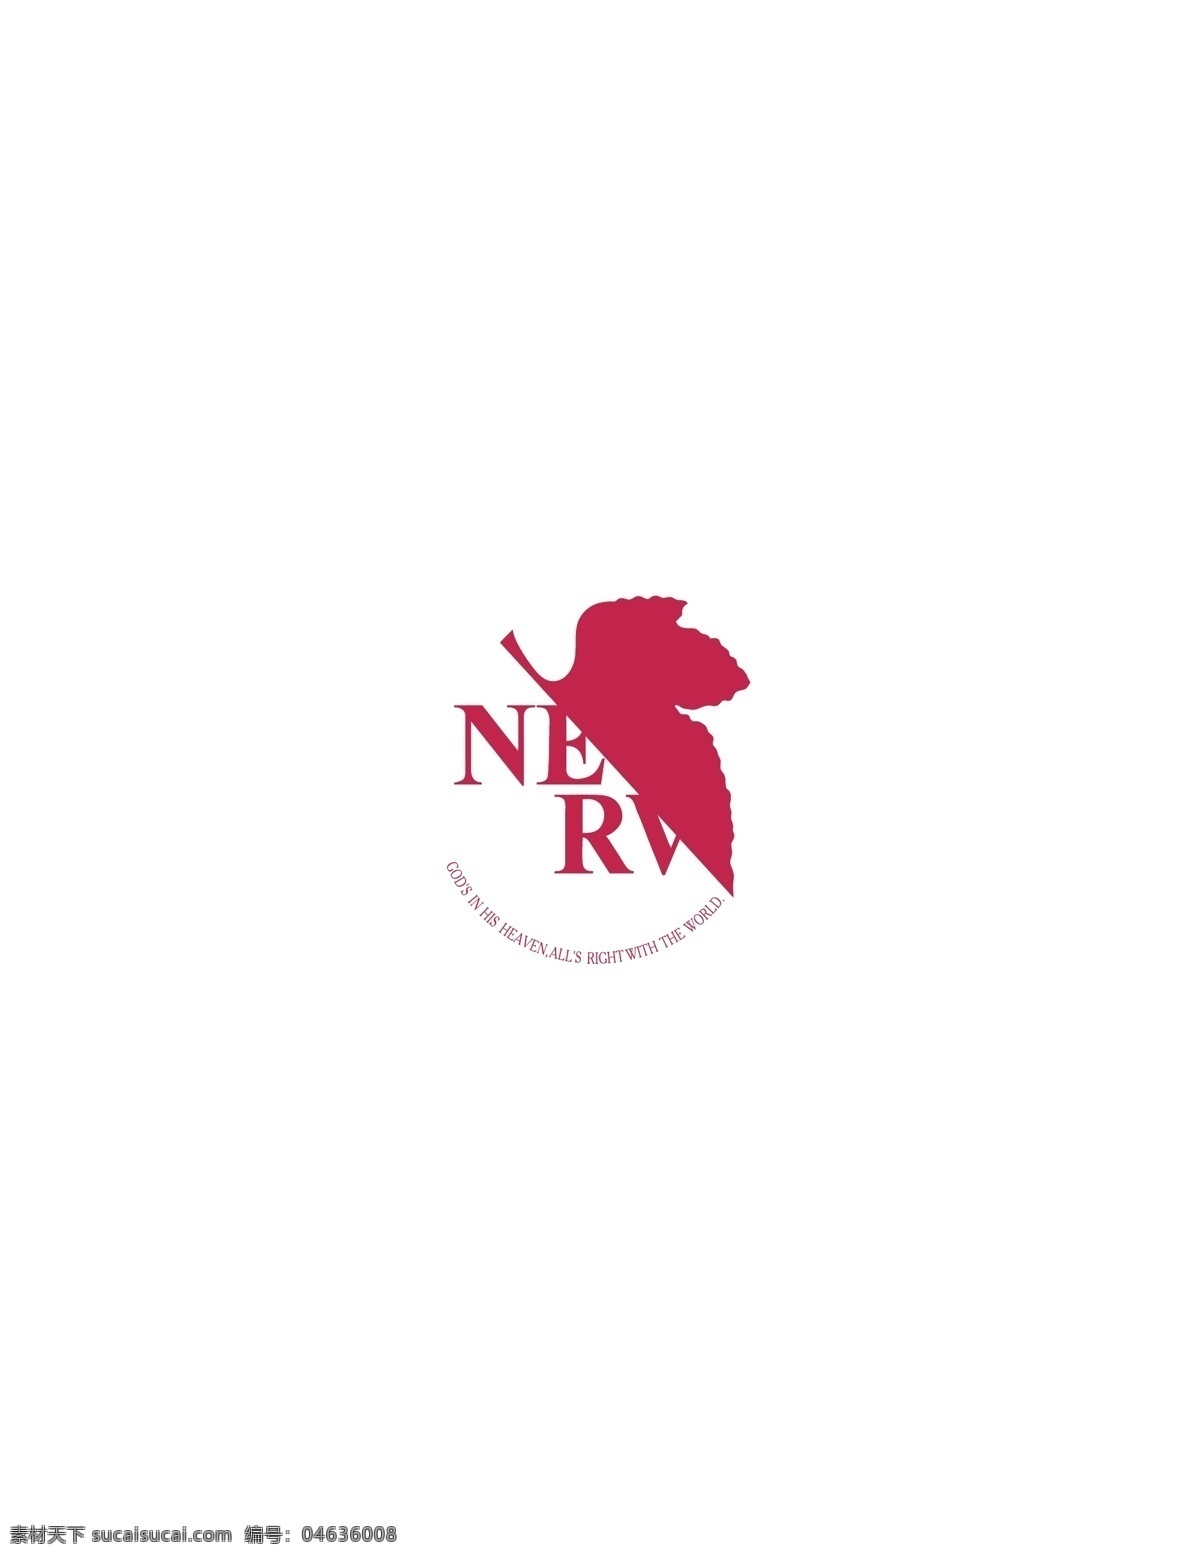 nerv logo大全 logo 设计欣赏 商业矢量 矢量下载 软件 硬件 公司 标志 标志设计 欣赏 网页矢量 矢量图 其他矢量图